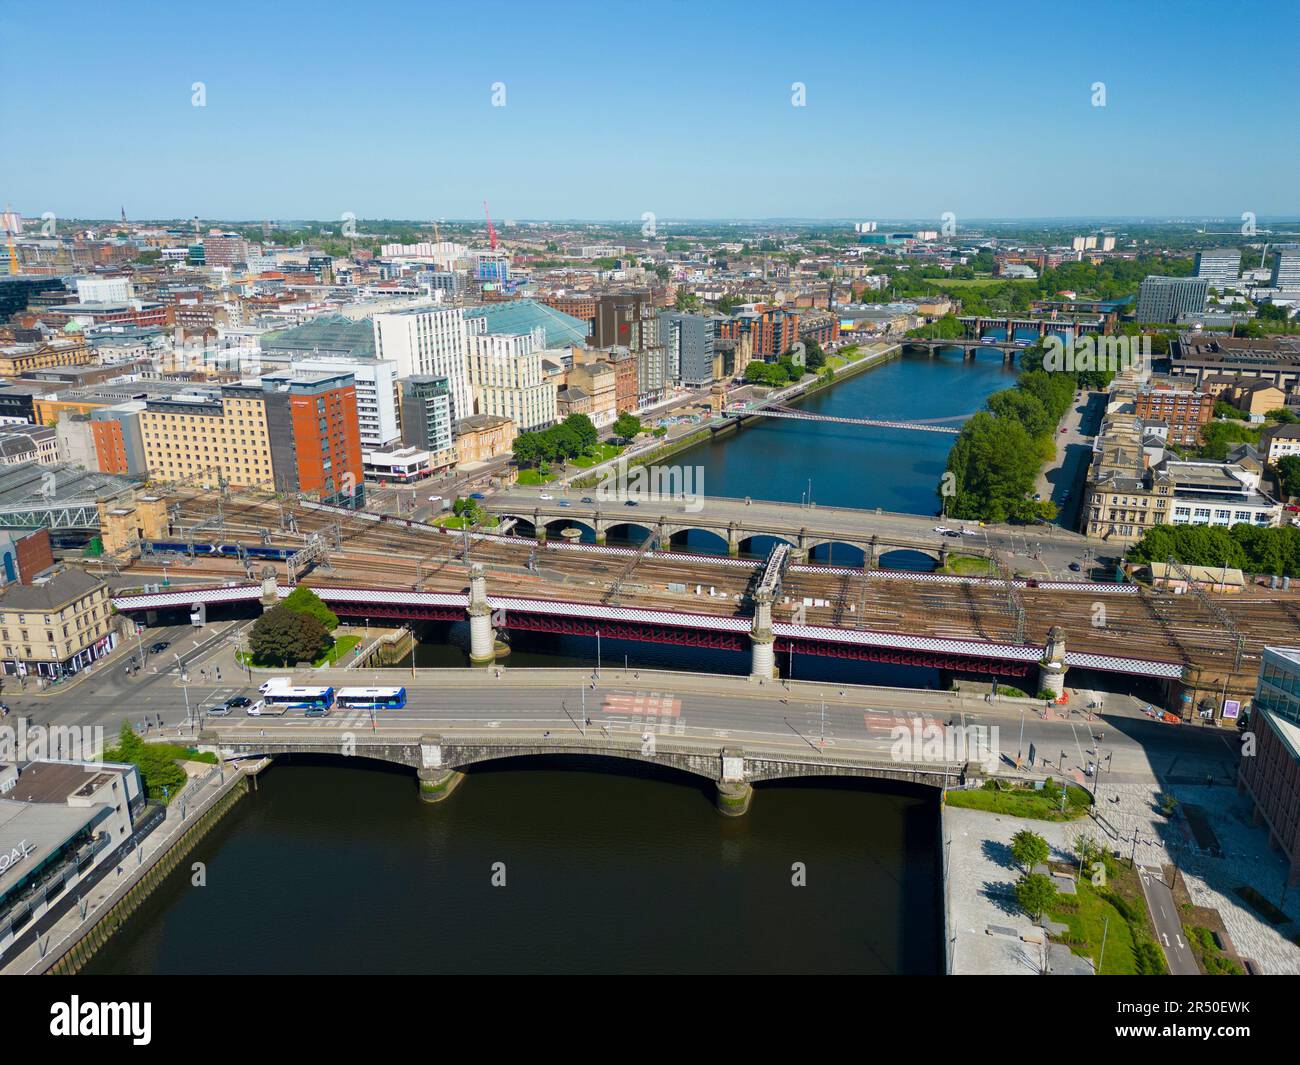 Vue aérienne depuis un drone de ponts routiers et ferroviaires traversant la rivière Clyde dans le centre-ville de Glasgow, Écosse, Royaume-Uni Banque D'Images